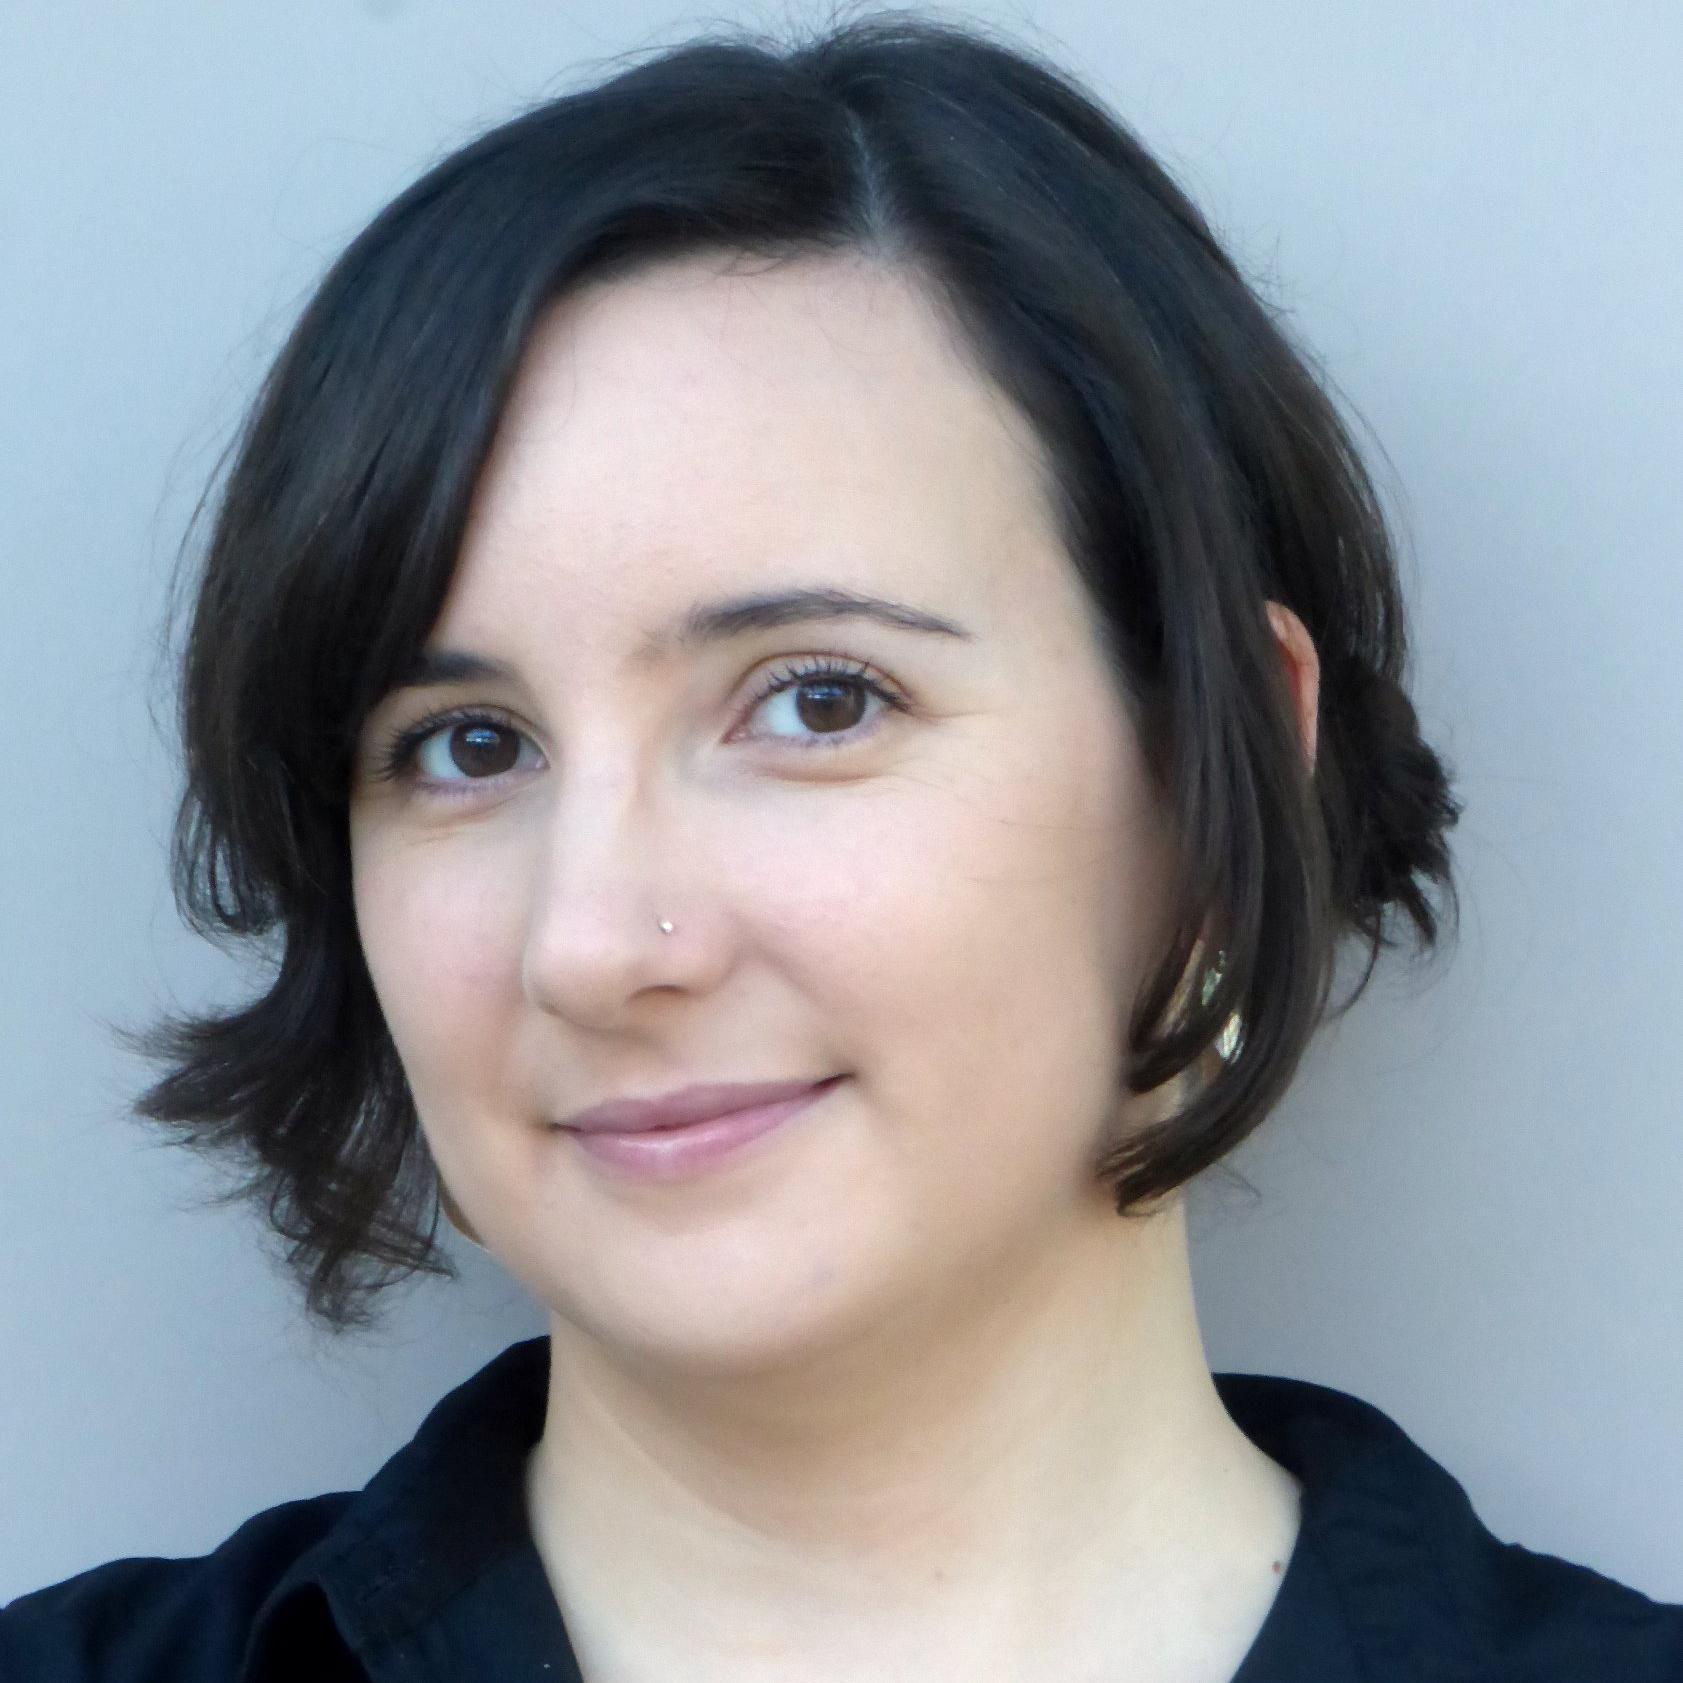 Former astrophysicist 🌌, feminist 💃, environmentalist 🌻, lead data scientist 📈, Welsh 🏴󠁧󠁢󠁷󠁬󠁳󠁿, she/her